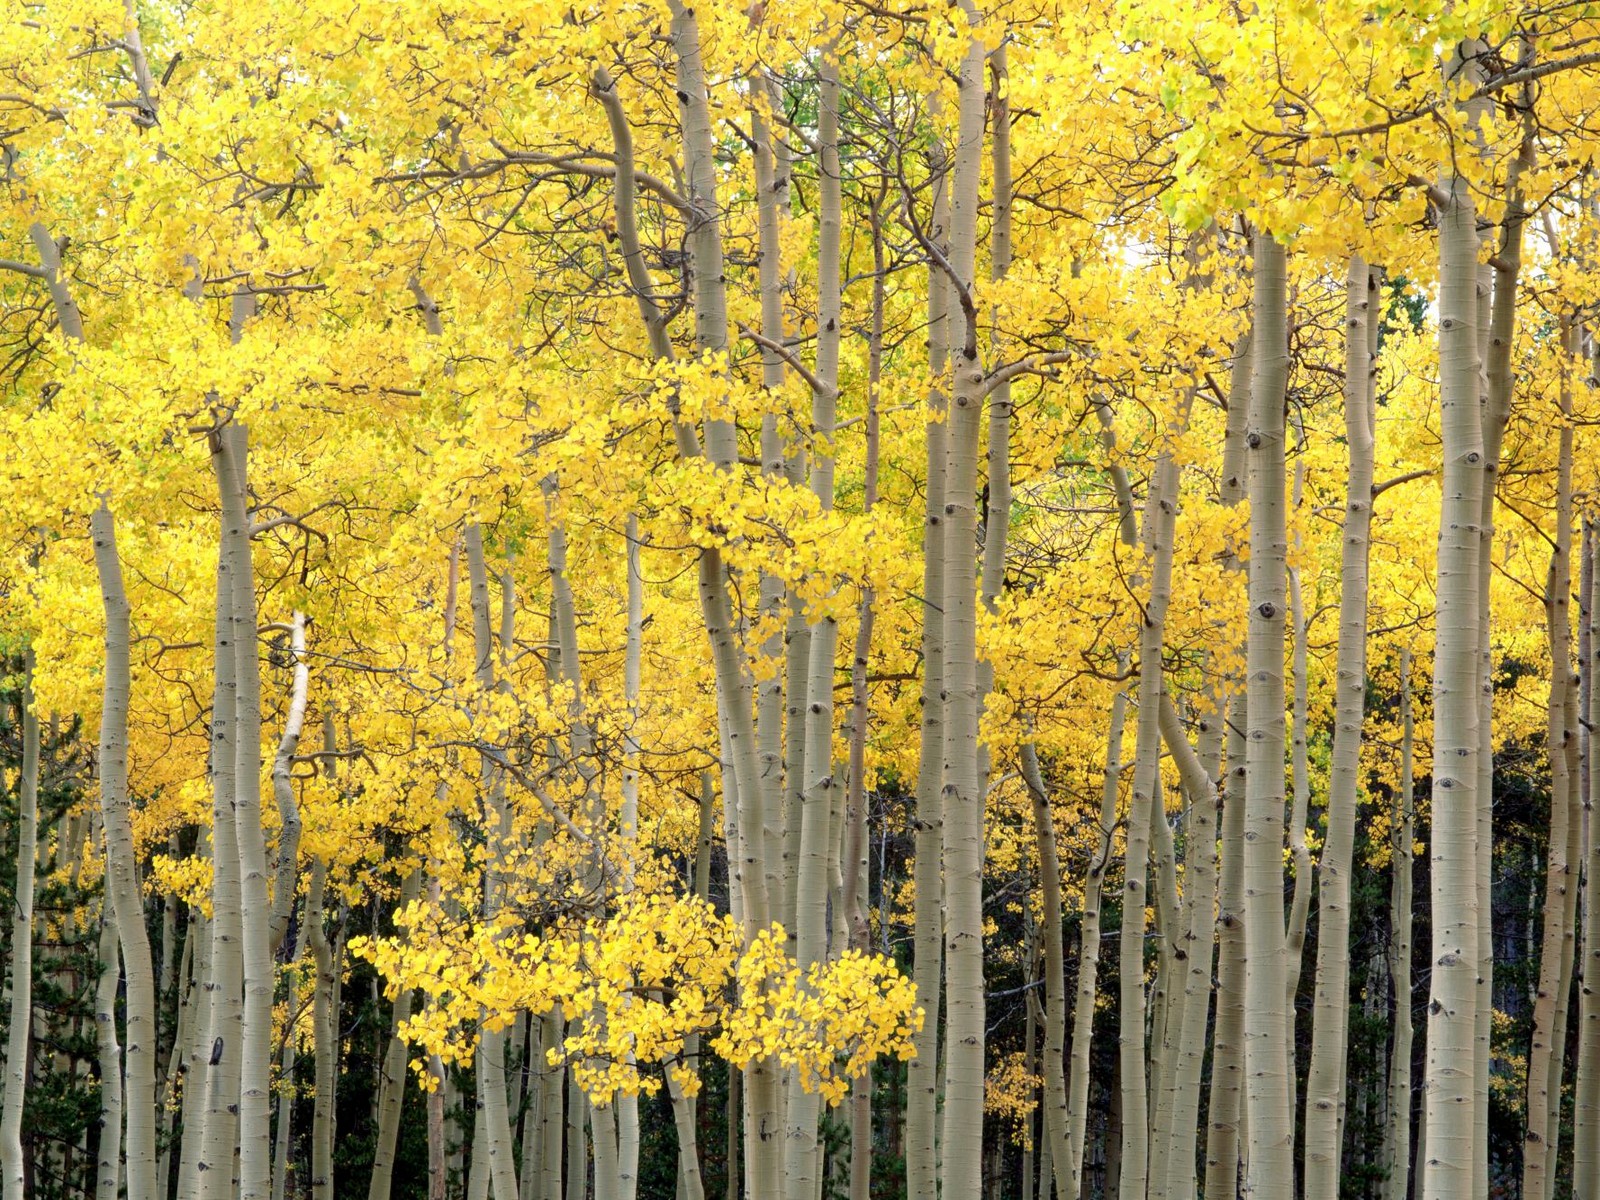 Autumn Aspens, Kenosha Pass, Pike National Forest, Colorado